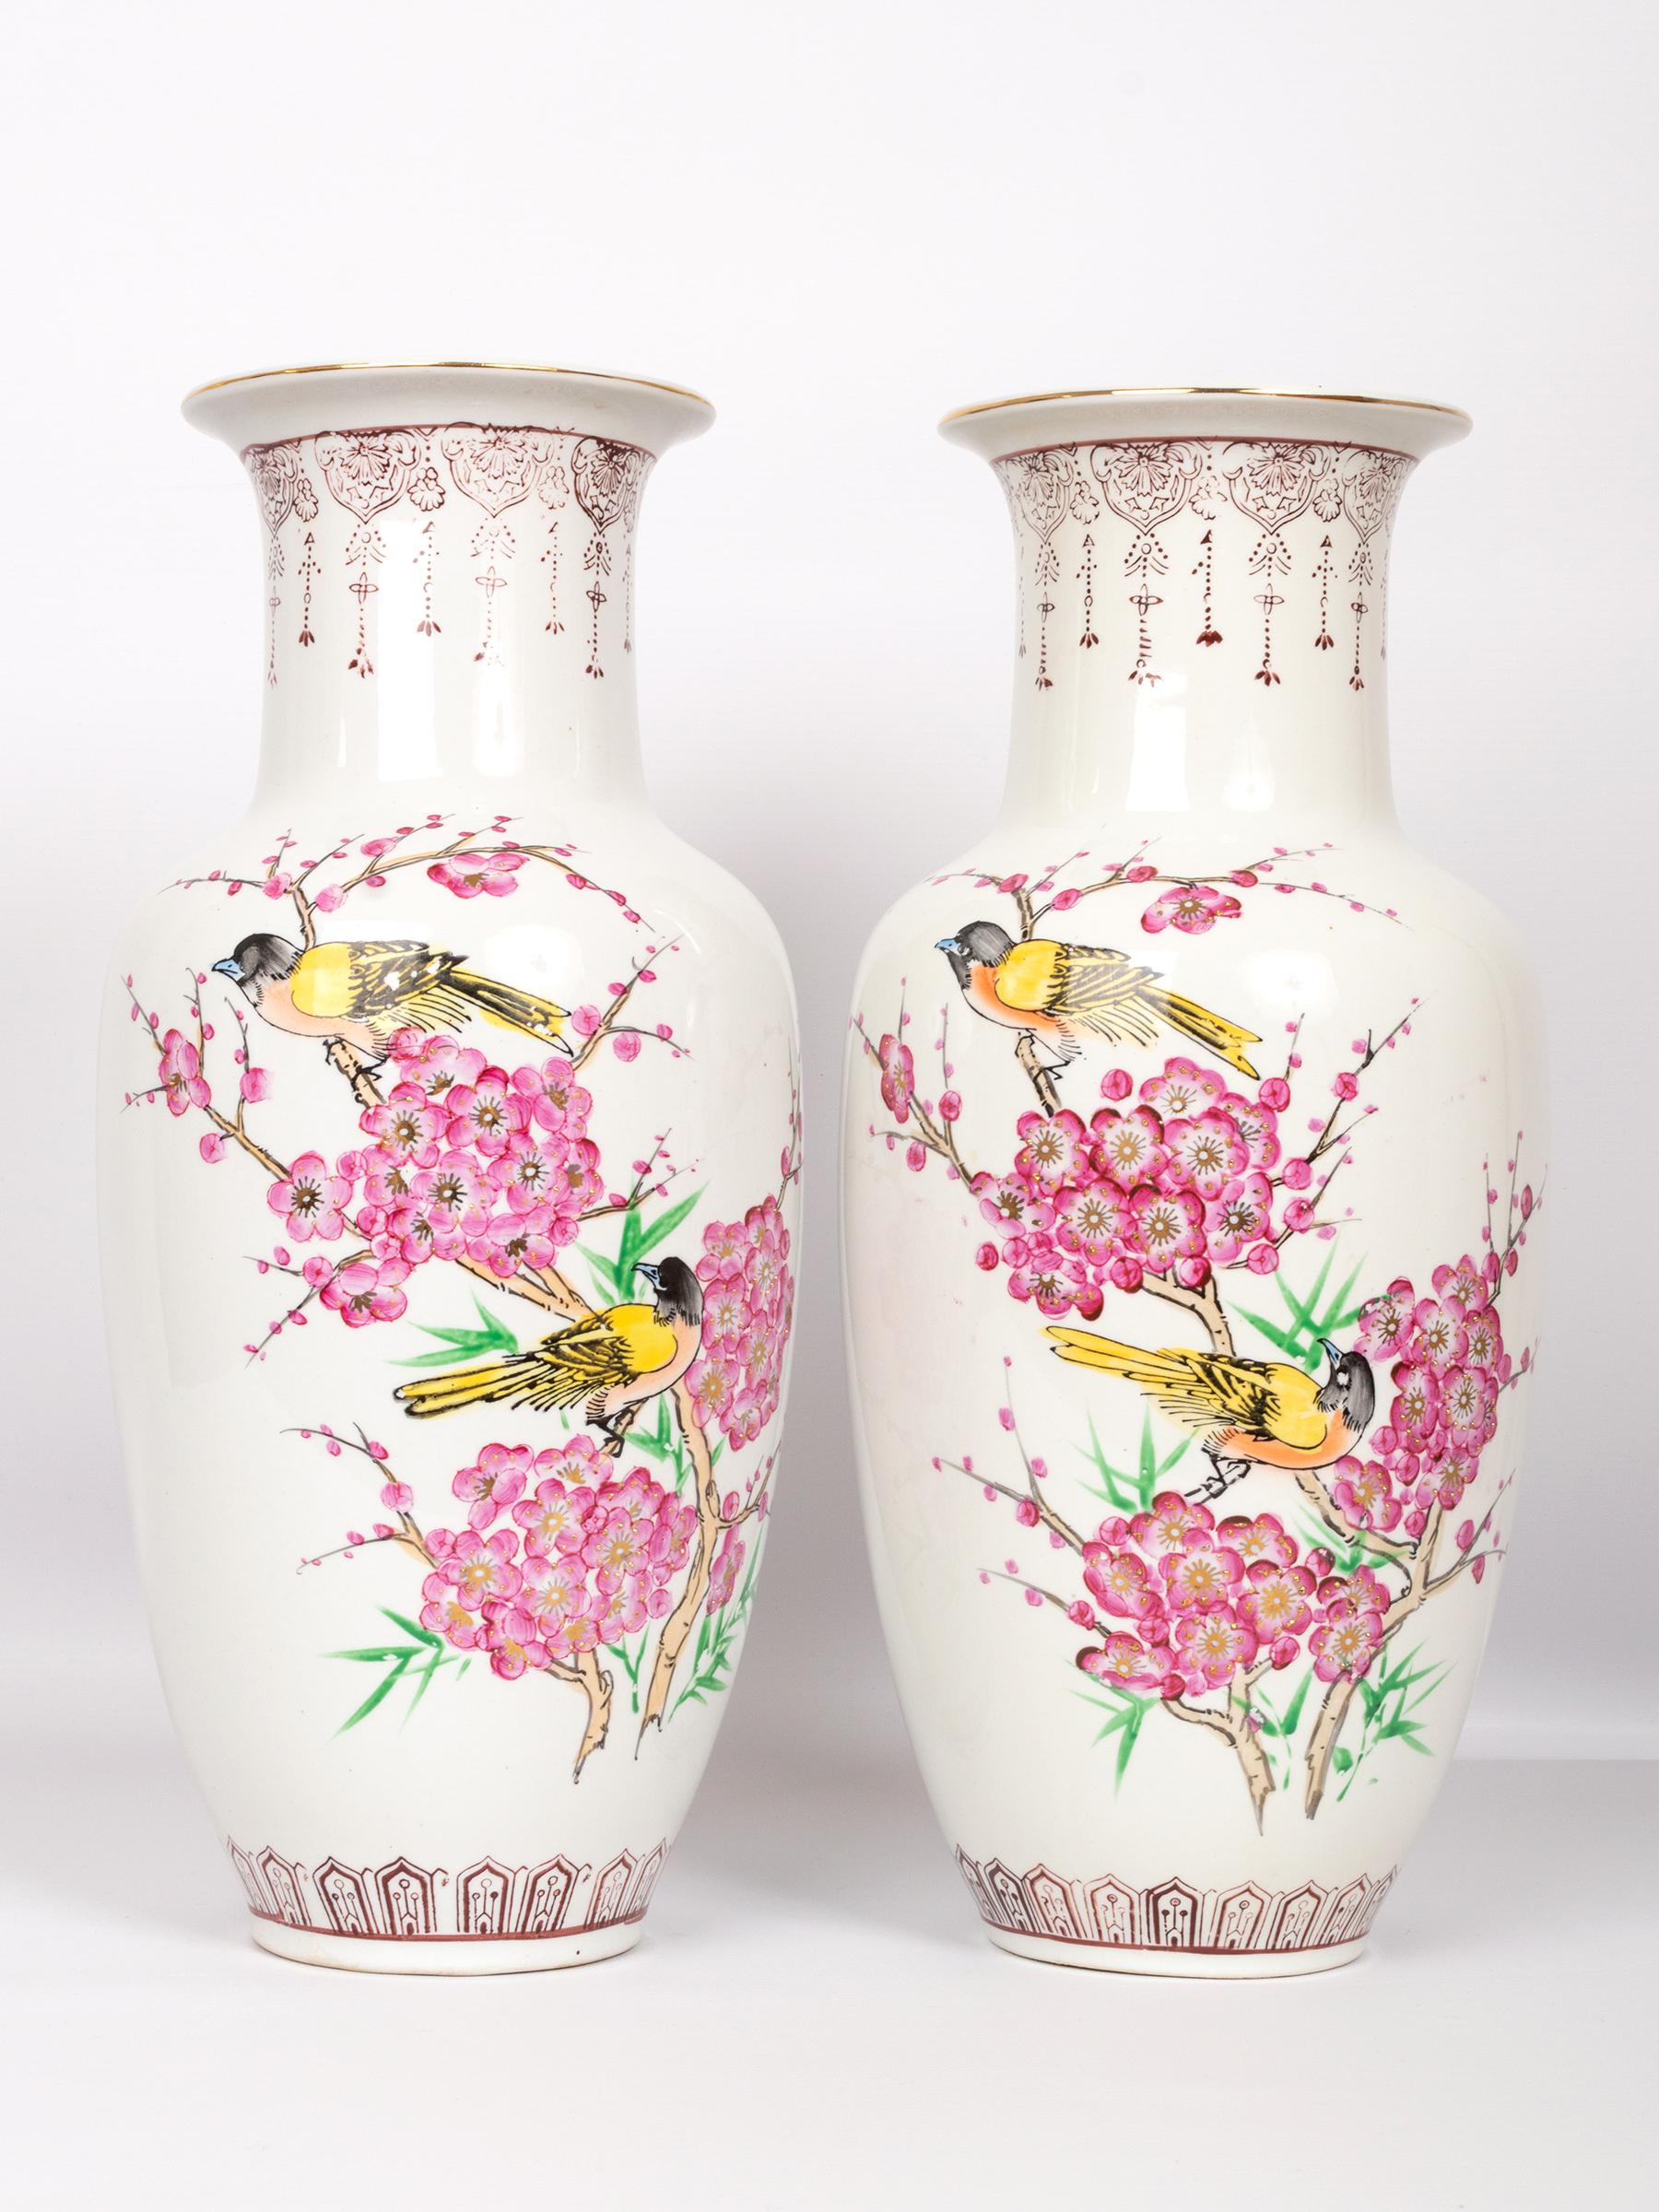 Paar hohe chinesische Famille Rose 'Birds And Blossom' Baluster Porzellanvasen,
Mit einer Siegelmarke am Sockel
Mitte des 20. Jahrhunderts
In sehr gutem Zustand, keine Risse oder Chips.